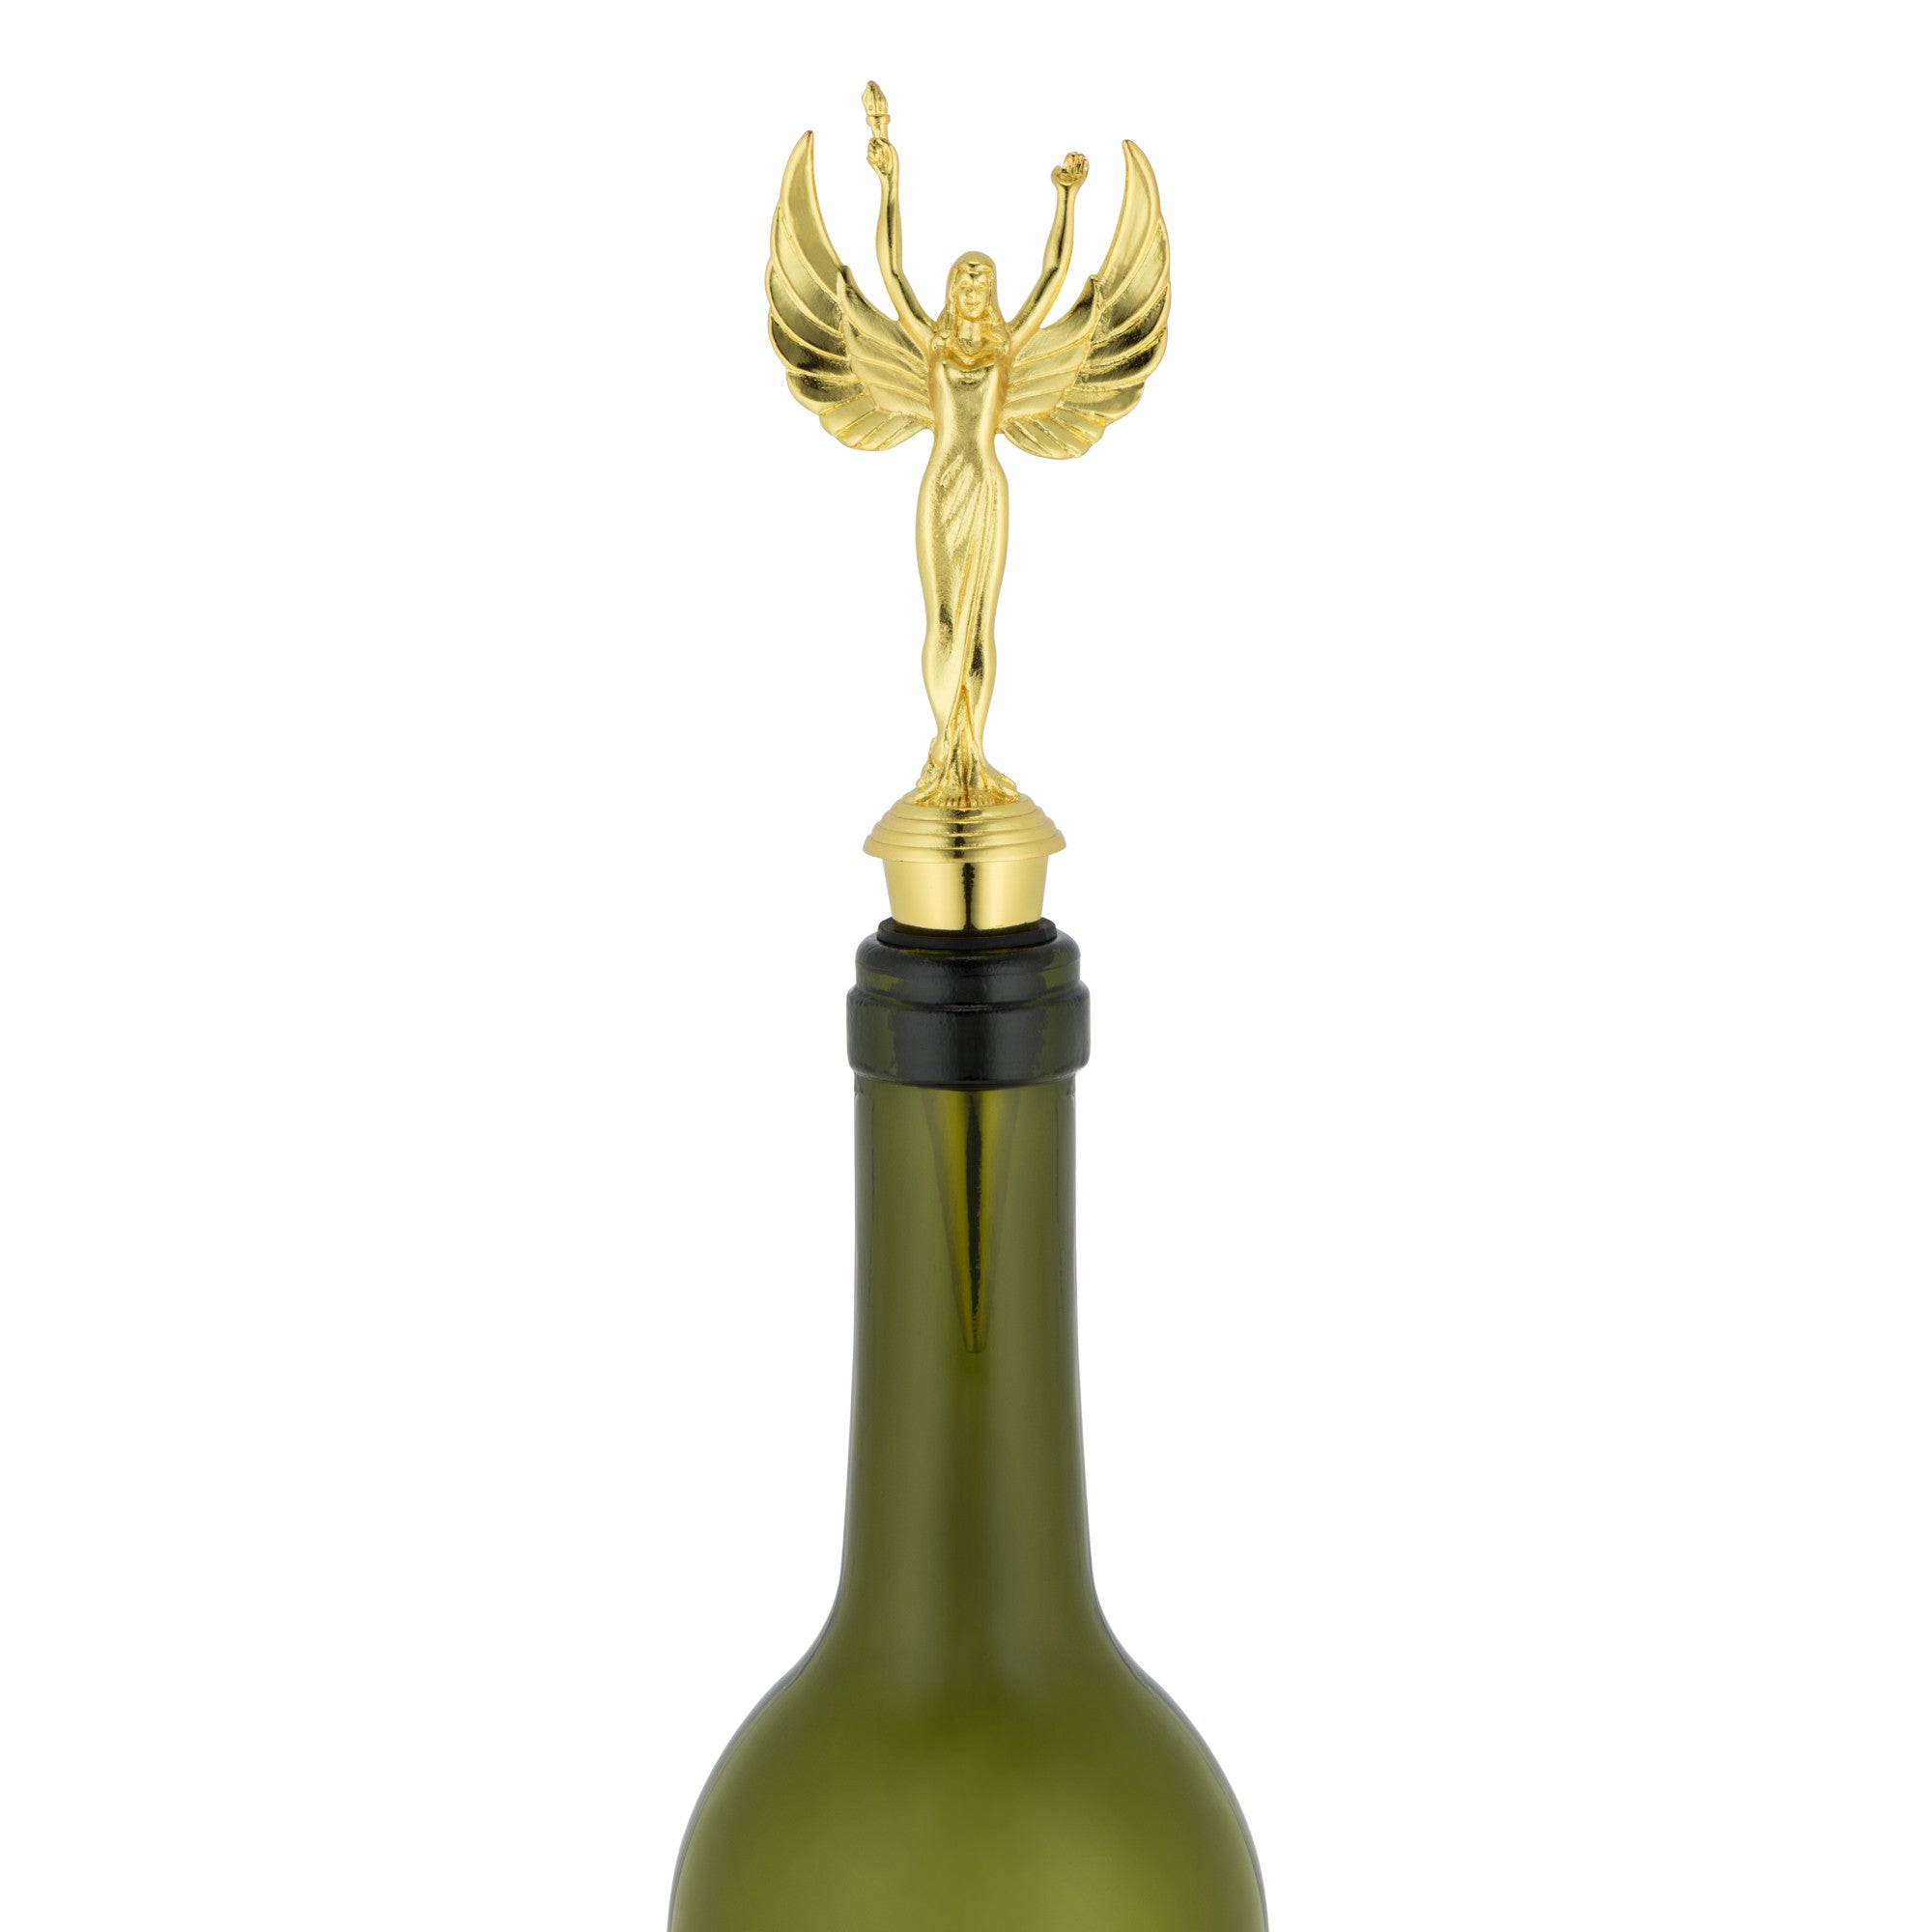 Vintage Trophy Wine Stopper